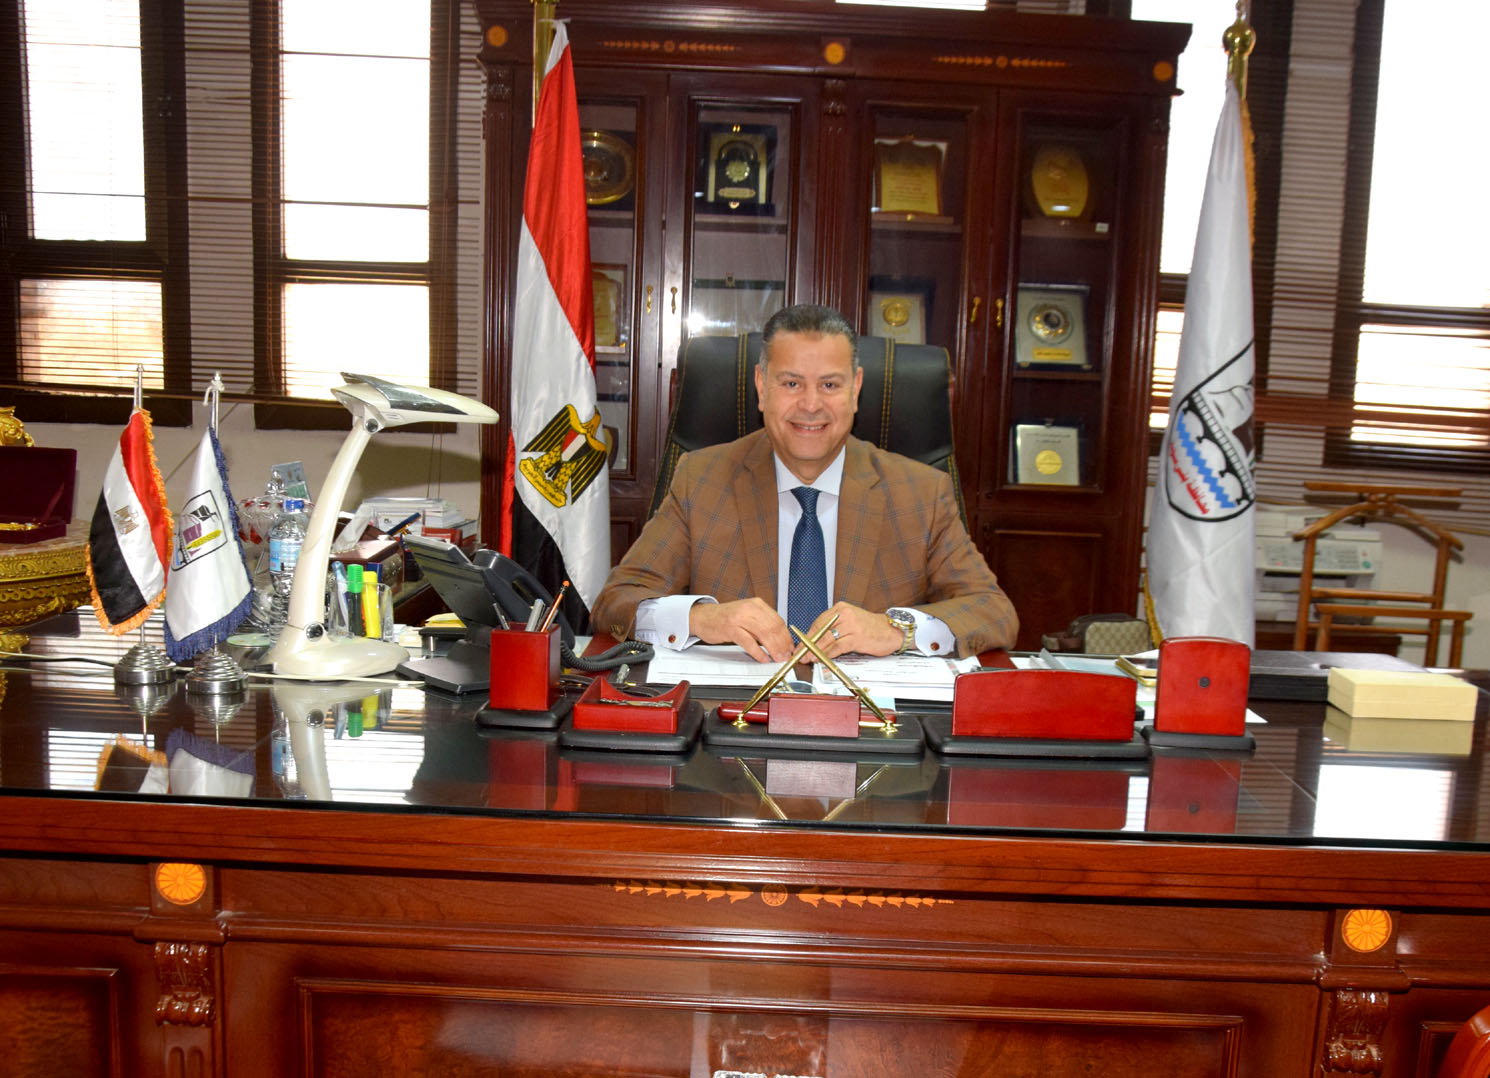   سفير مصر في أوتاوا: حجم التبادل التجاري مع كندا وصل إلى 1.2 مليار دولار